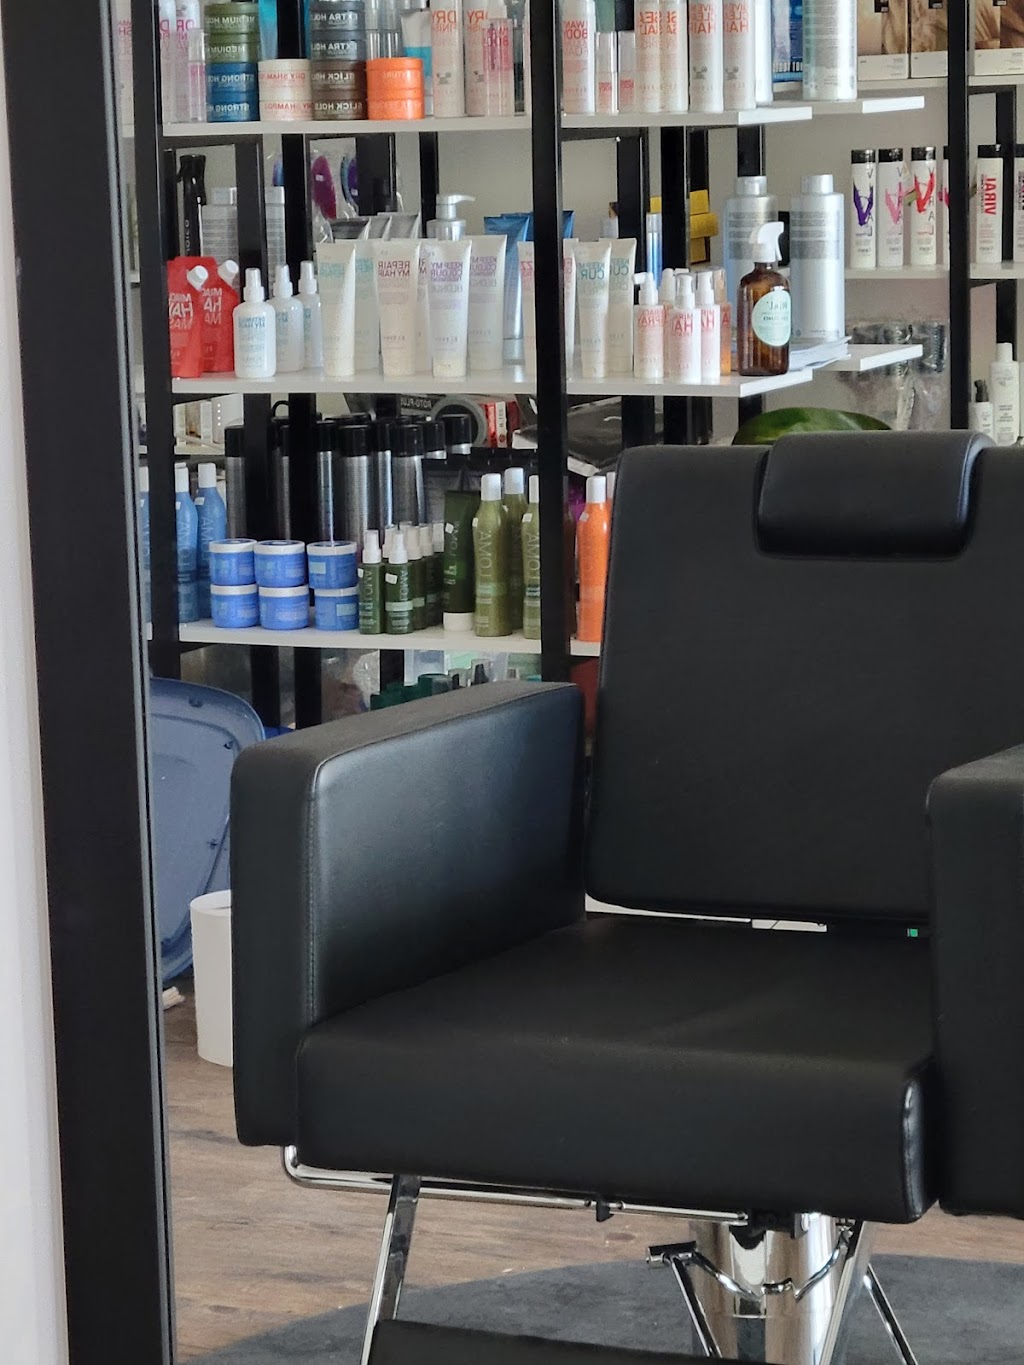 CG Hair Salon | 5405 Argyle St #112, Port Alberni, BC V9Y 1T6, Canada | Phone: (250) 735-4220